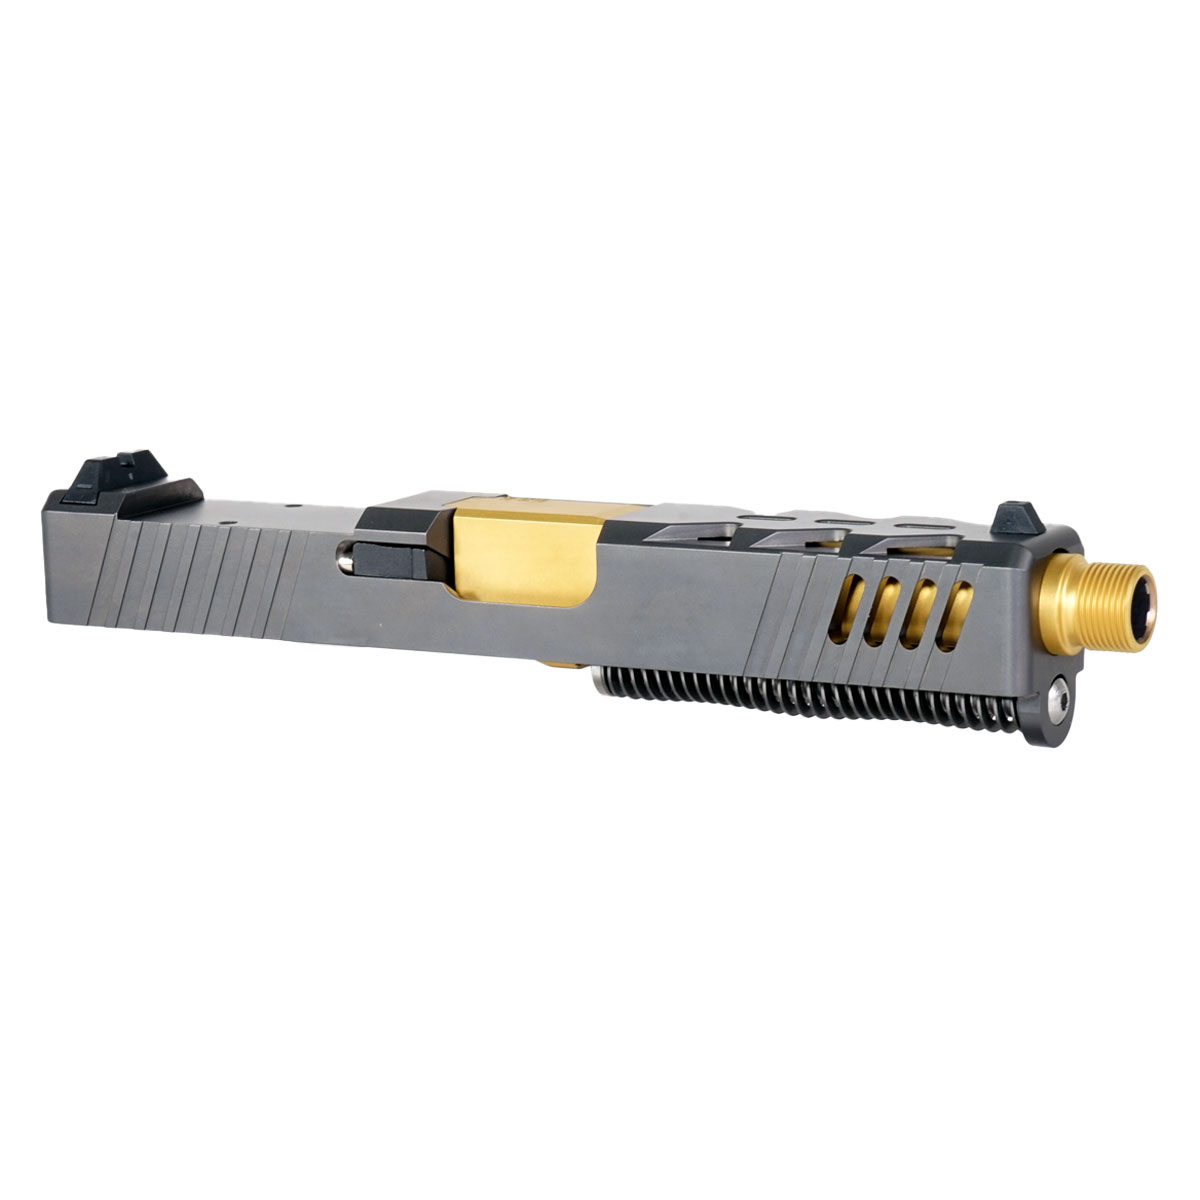 DDS 'The Rickster' 9mm Complete Slide Kit - Glock 19 Gen 1-3 Compatible